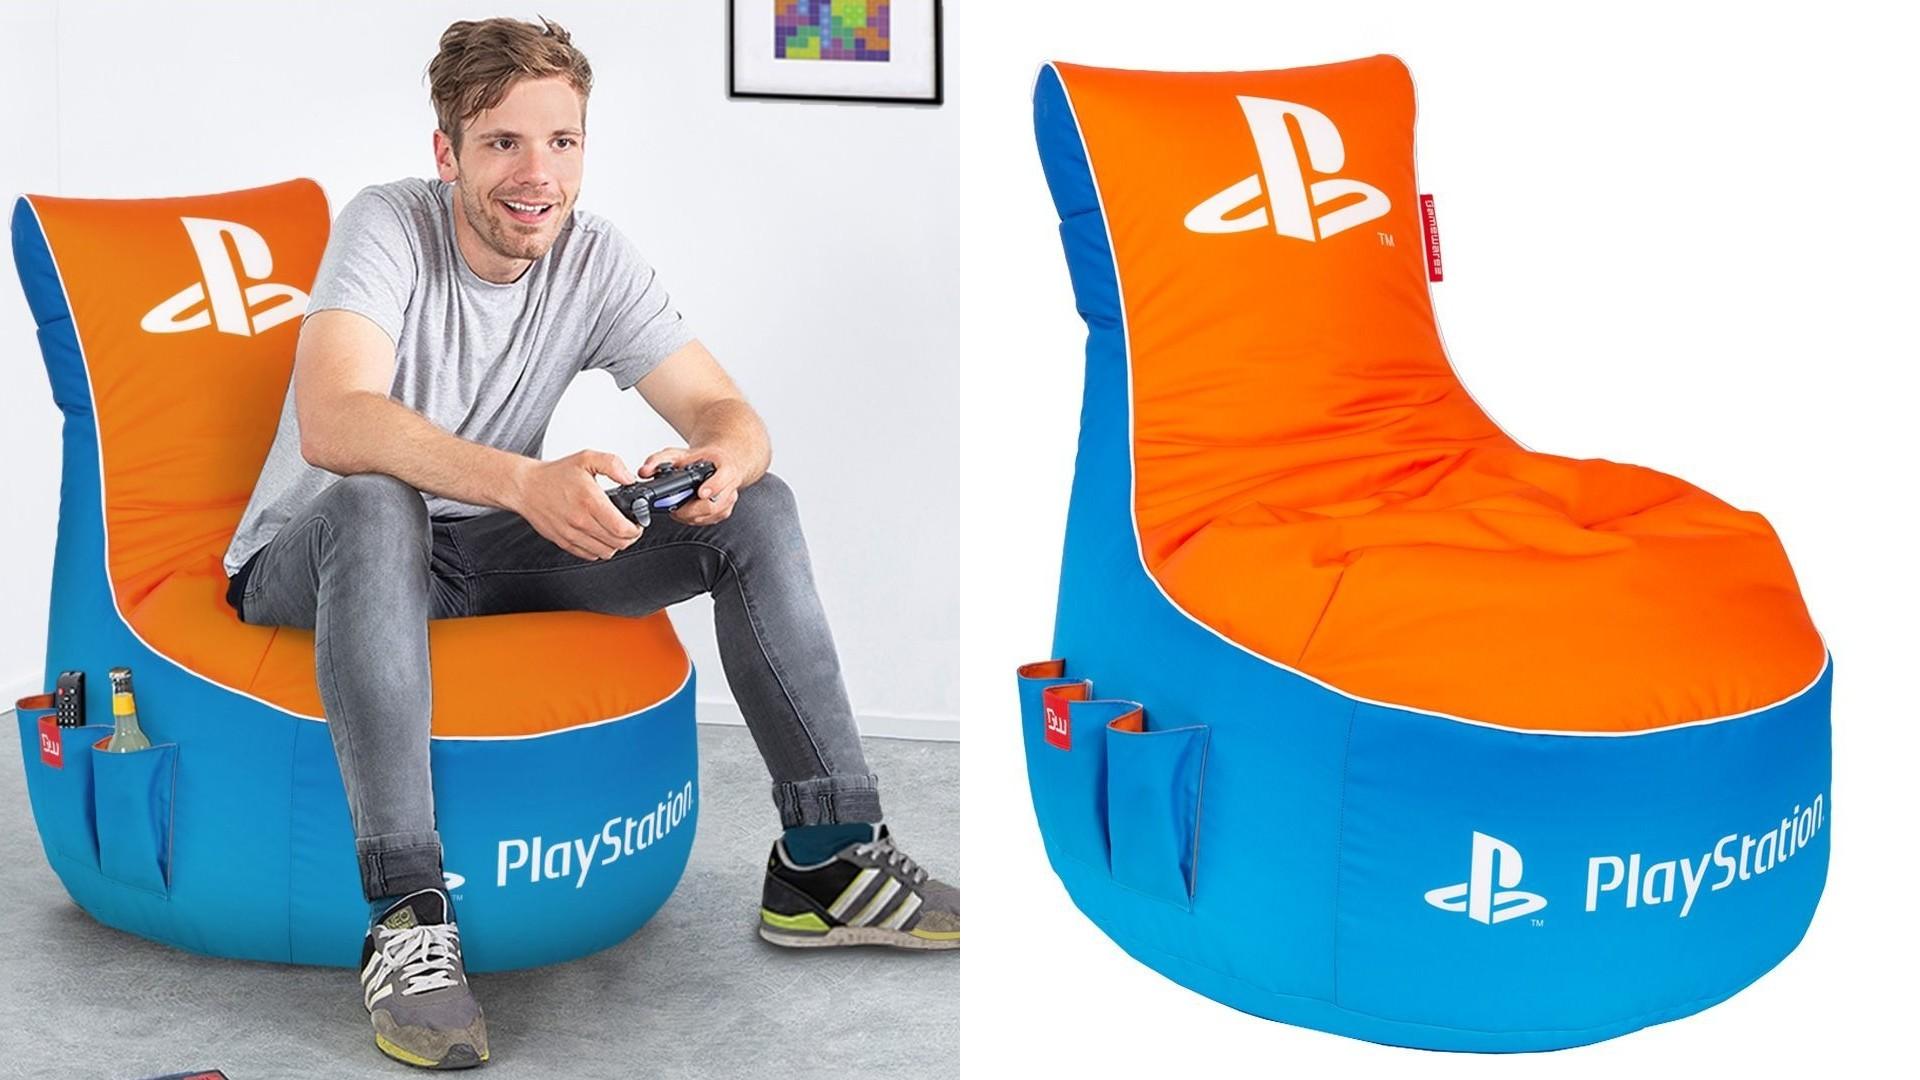 Deze PlayStation zitzak is nu te koop bij supermarkt